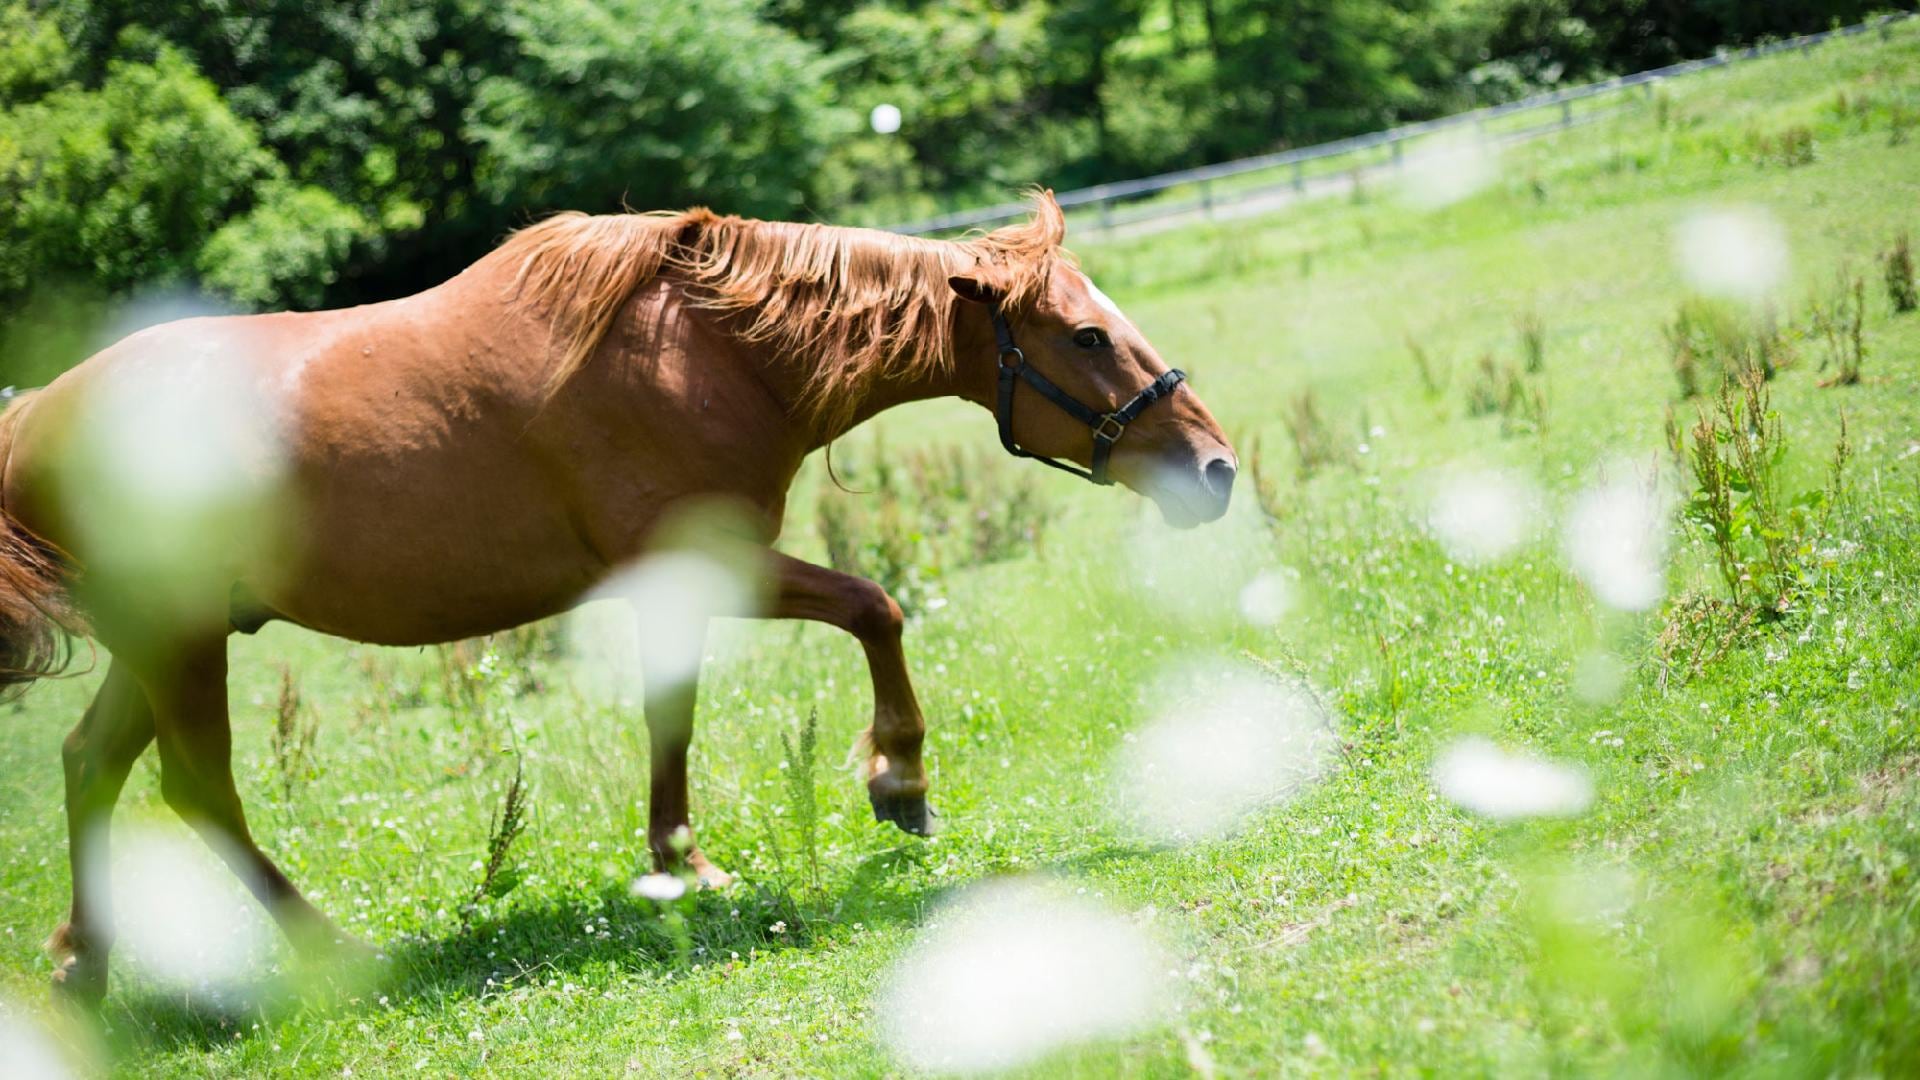 [Outside scene] Horses spending leisurely